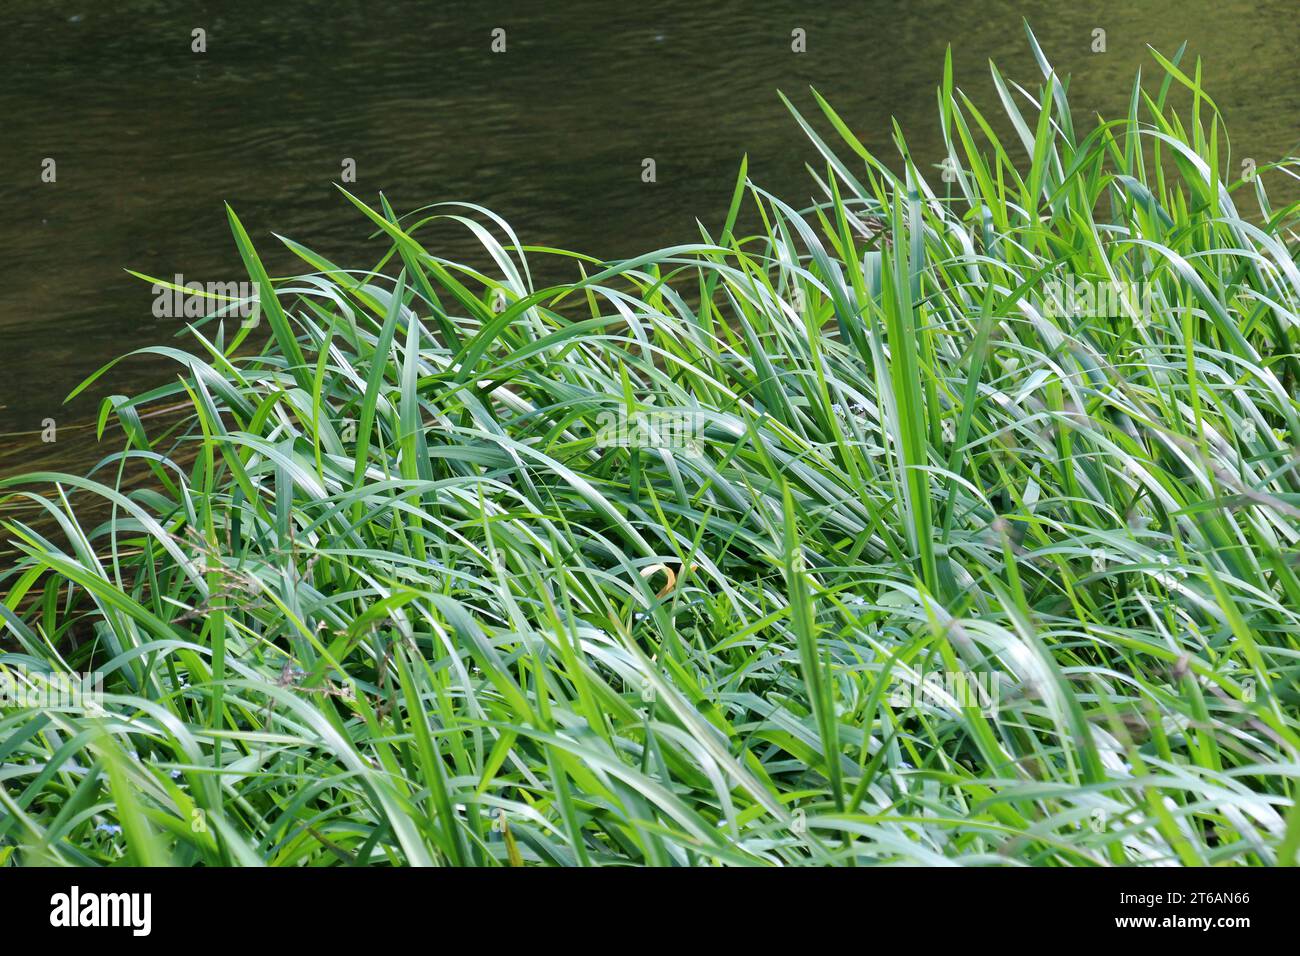 Sur les rives de la rivière et dans l'eau, le grain fourrage Glyceria maxima pousse Banque D'Images